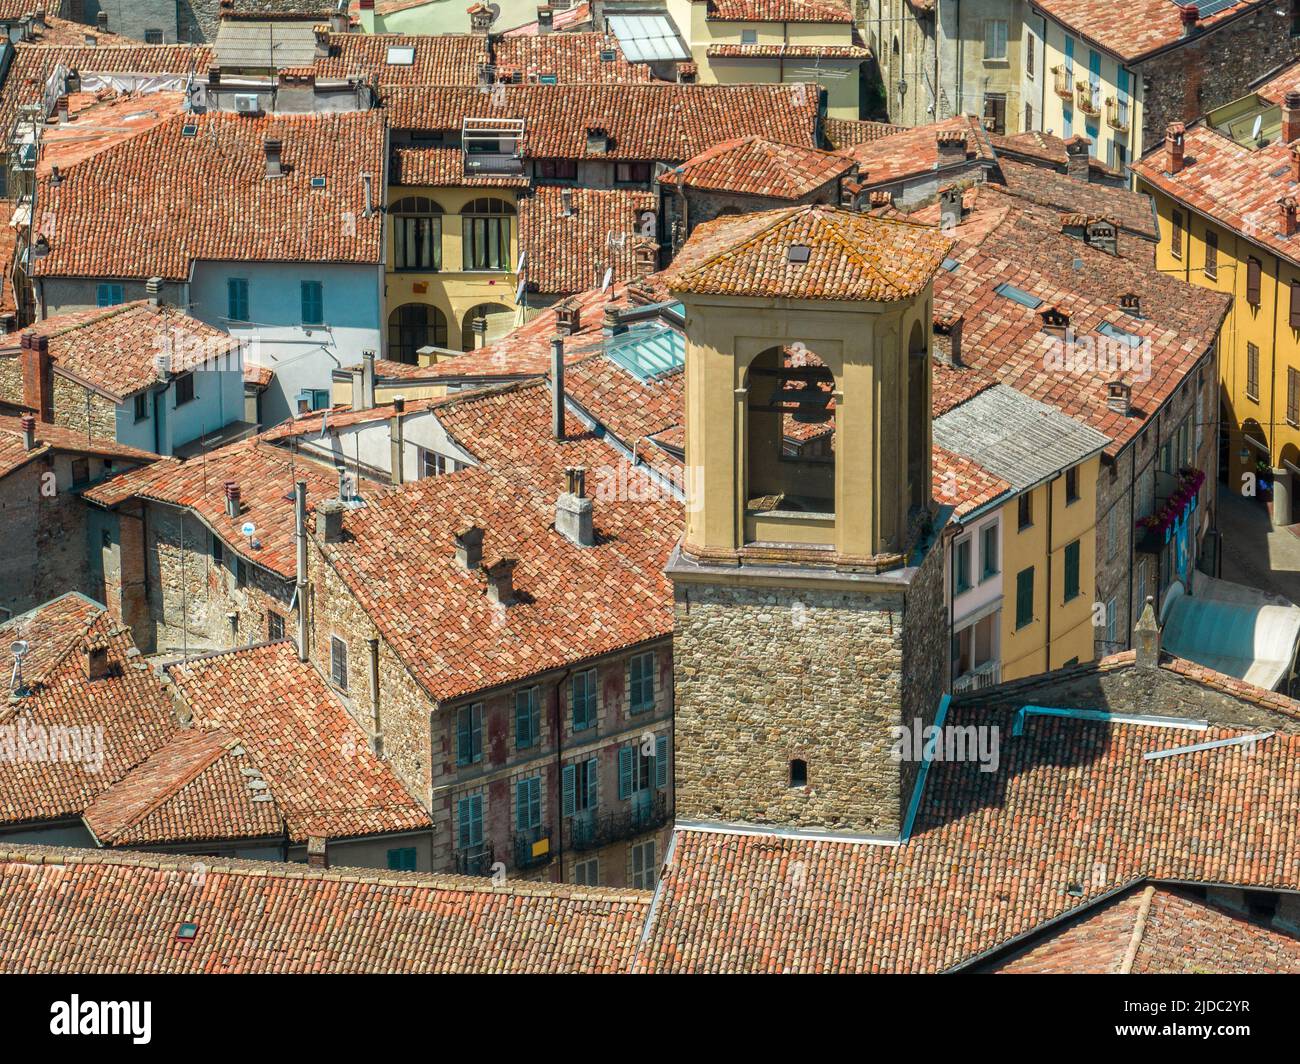 Luftaufnahme von Bobbio, einer Stadt am Trebbia Fluss. Brücke. Piacenza, Emilia-Romagna. Details des städtischen Komplexes, Dächer und Glockentürme. Italien Stockfoto